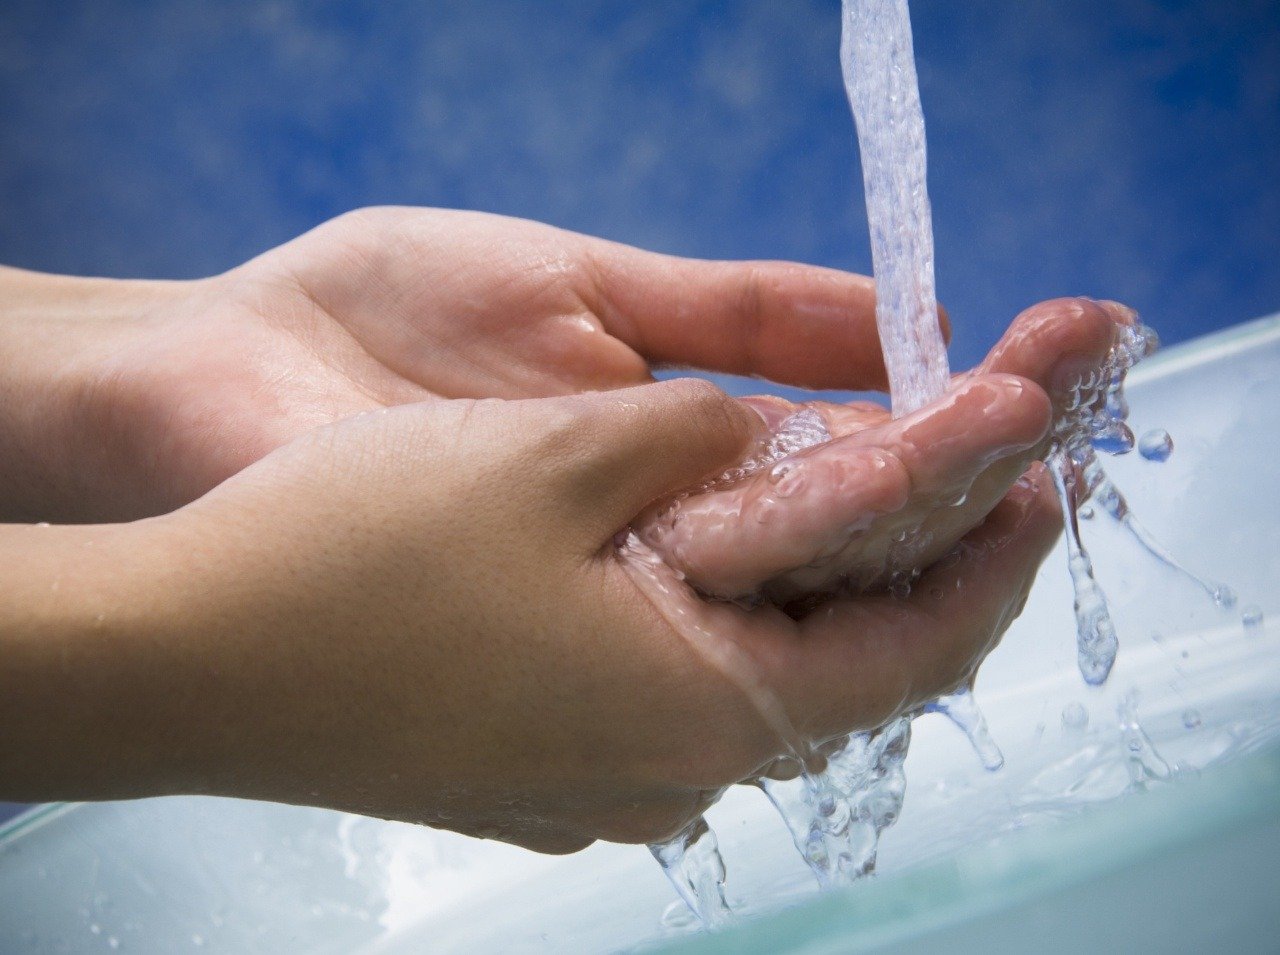 Ako si umývate ruky vy? Máte zaručený postup alebo si ich umývate len tak ledabolo? 